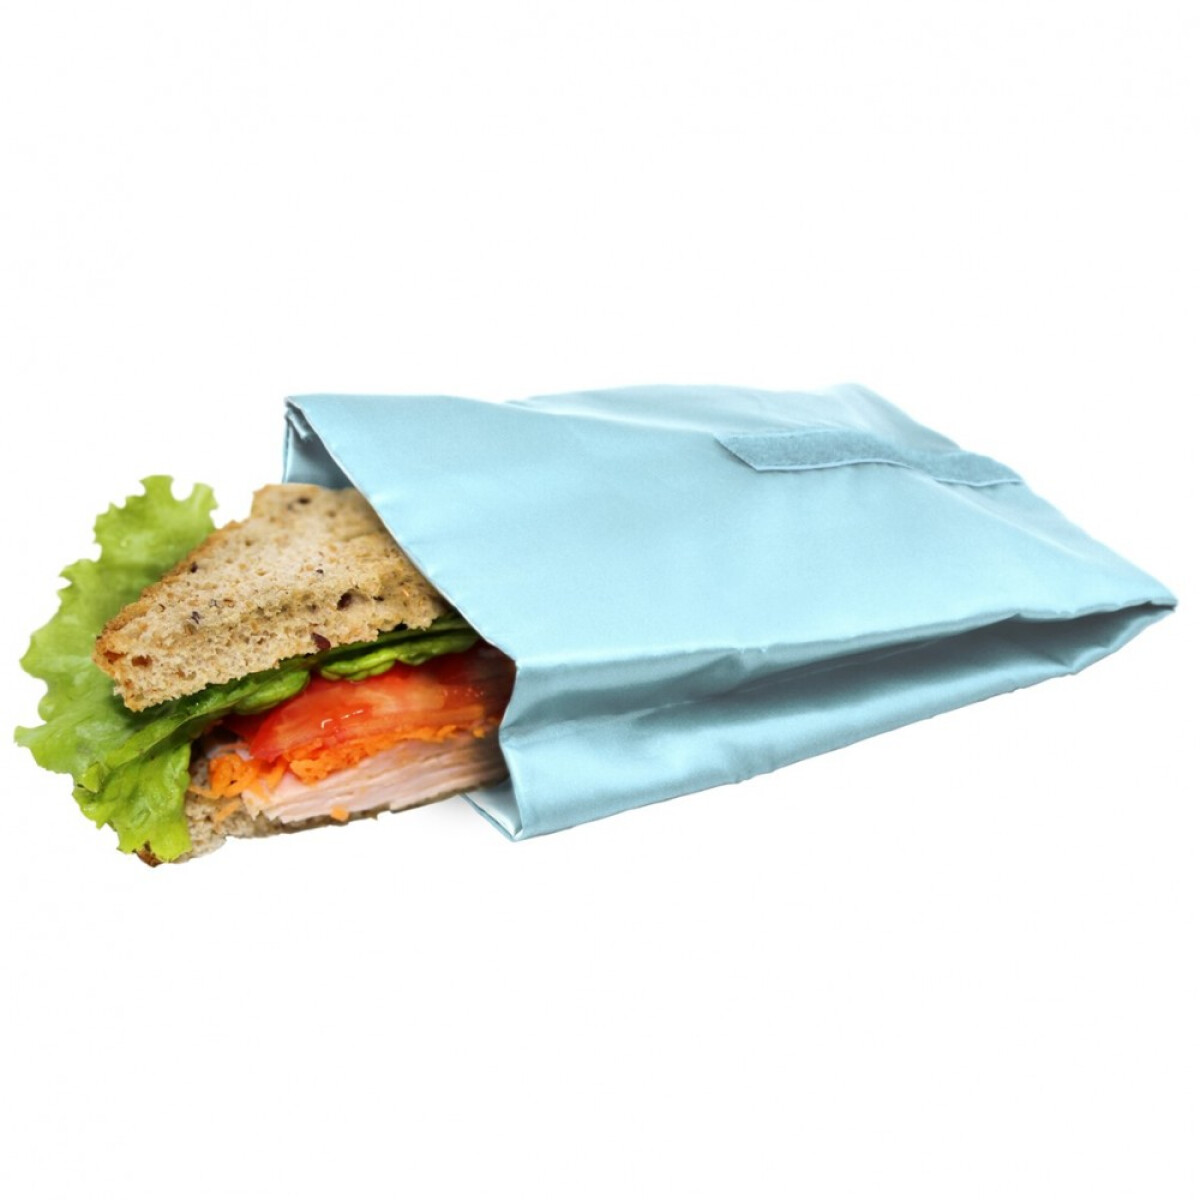 Джоб / чанта за сандвичи и храна Nerthus - цвят син